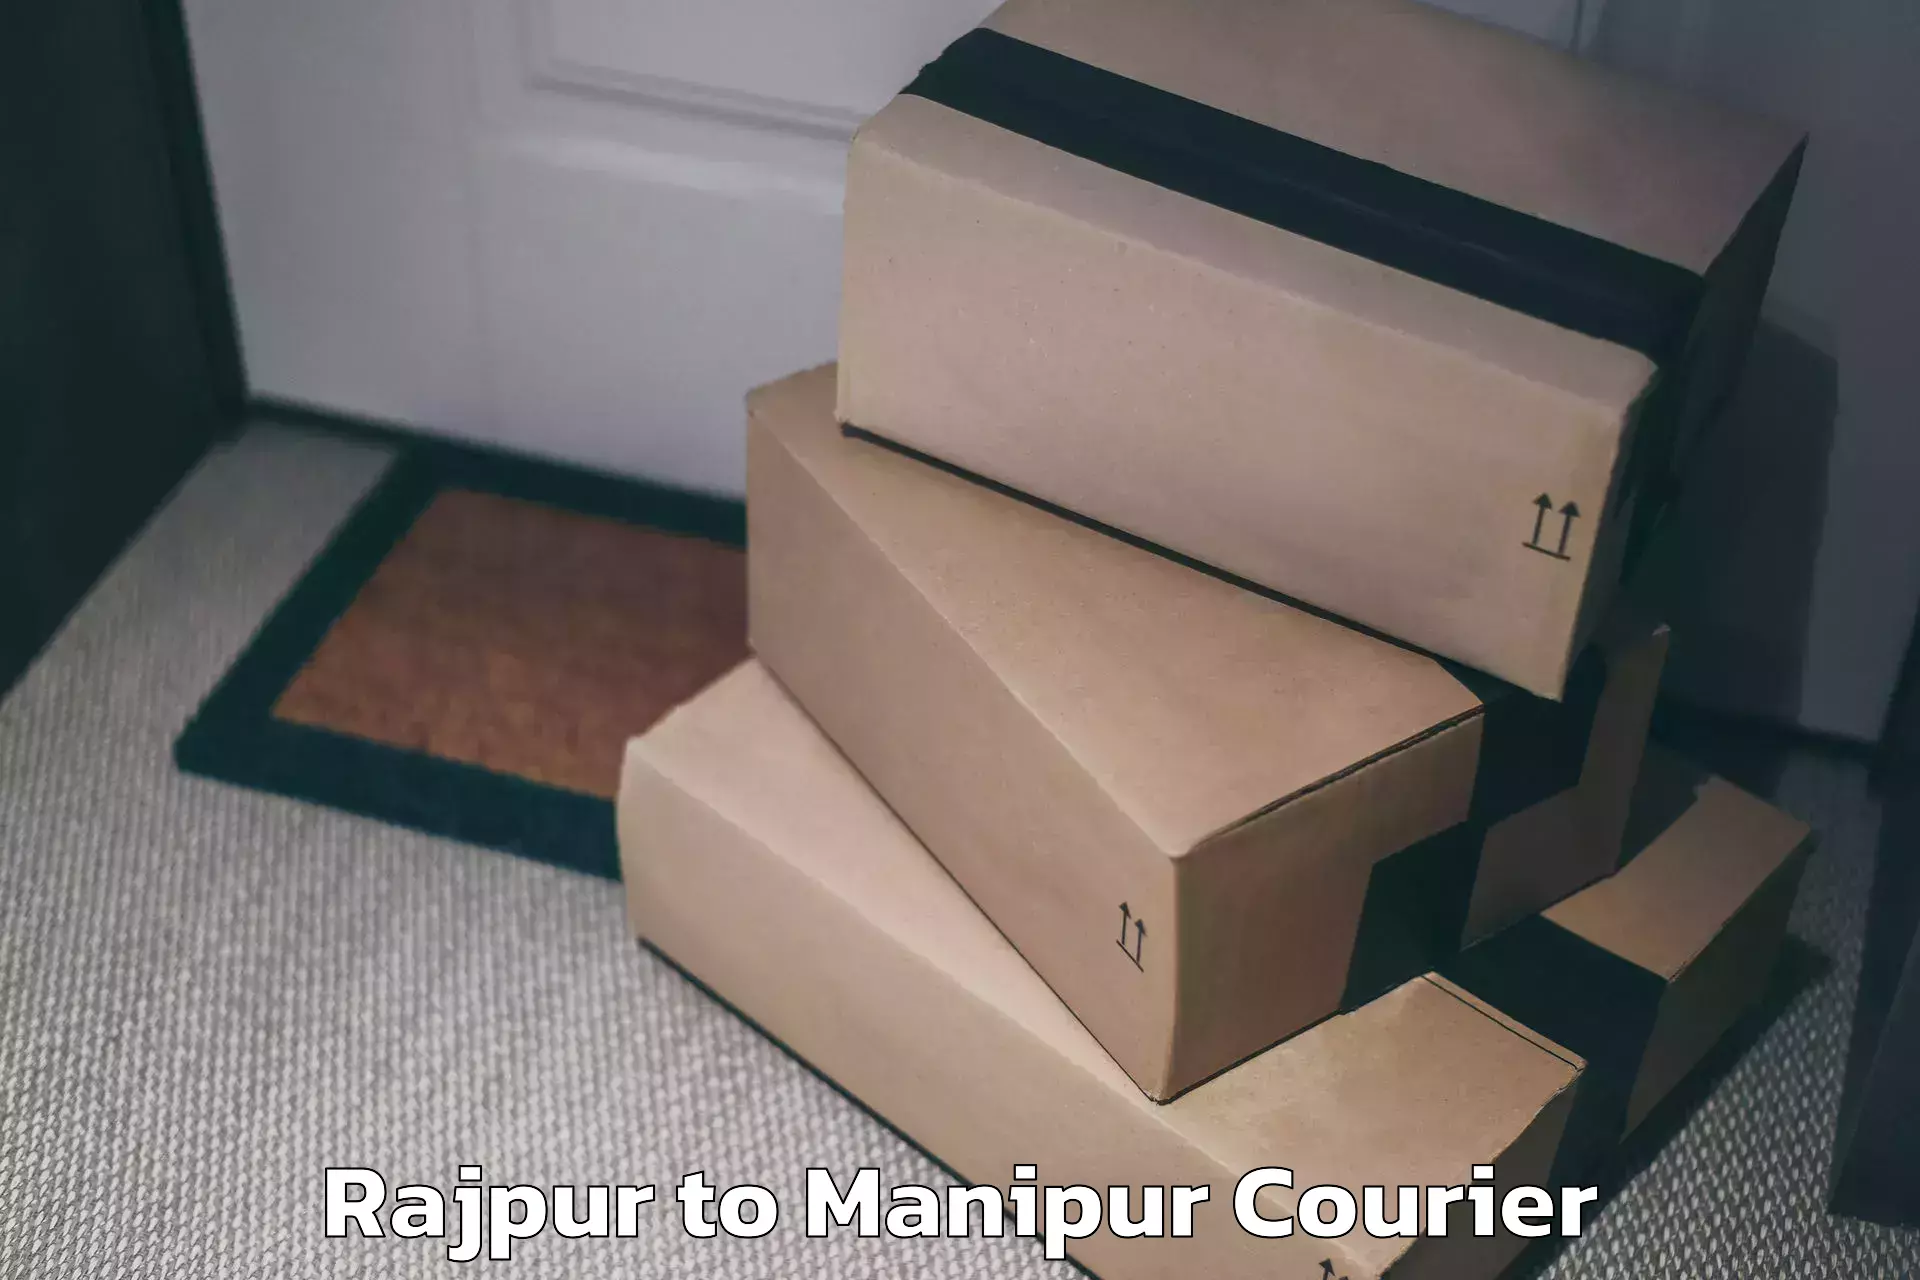 Door-to-door baggage service Rajpur to Kanti